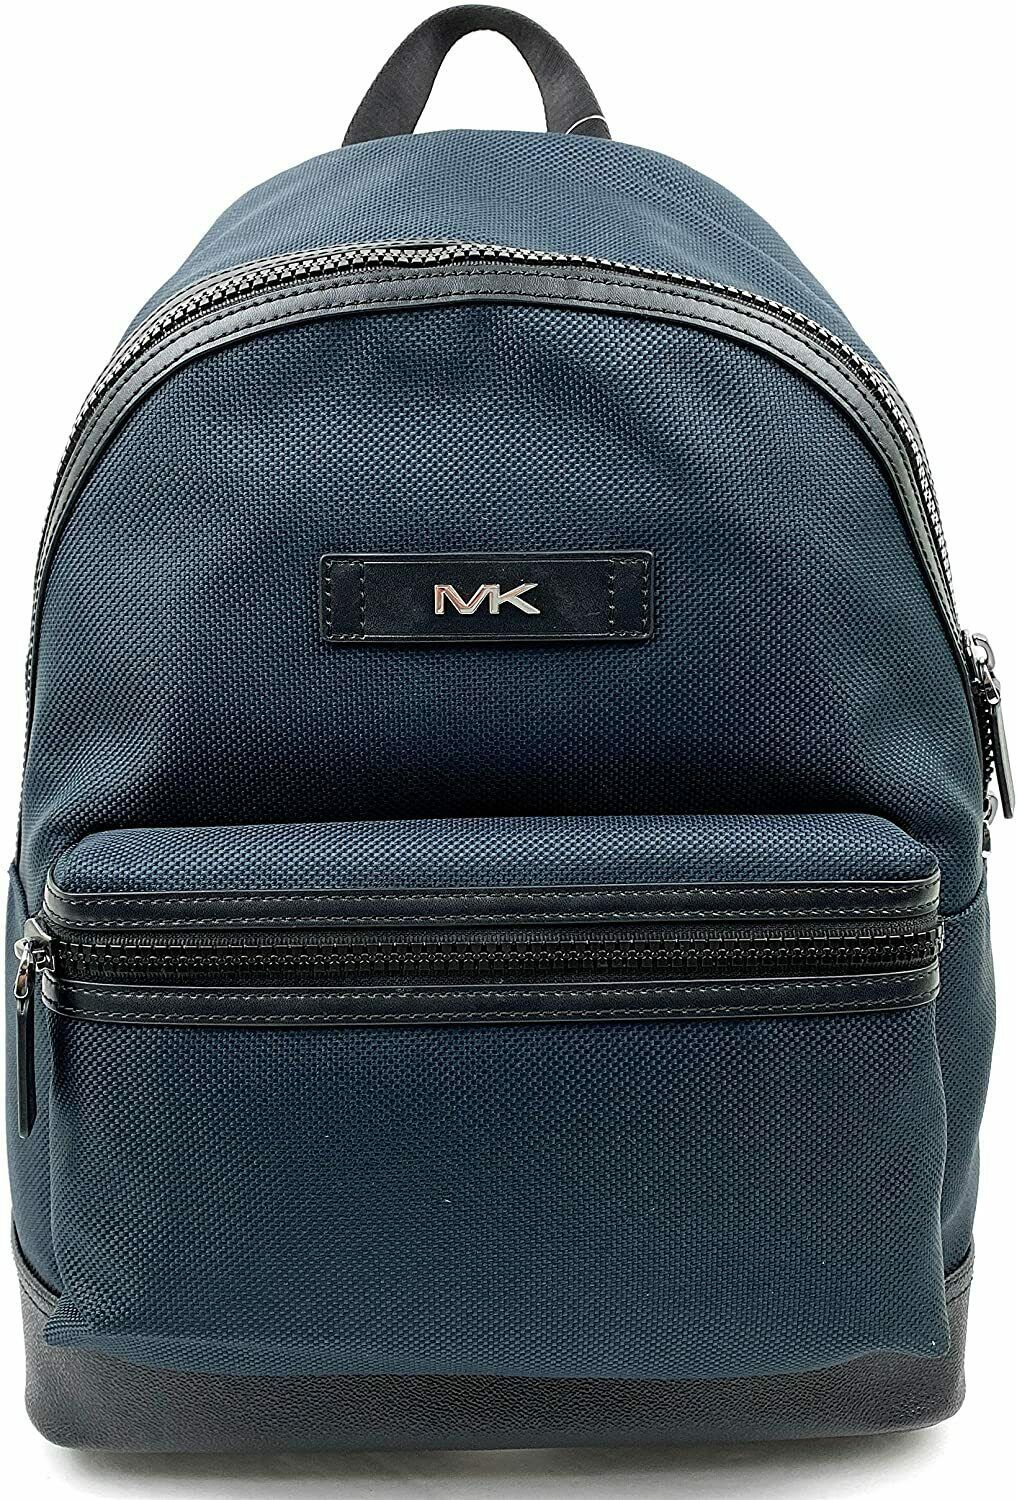 NWB Michael Kors Kent Sport Navy Blue Nylon LG Backpack 37F9LKSB2C Dust Bag FS